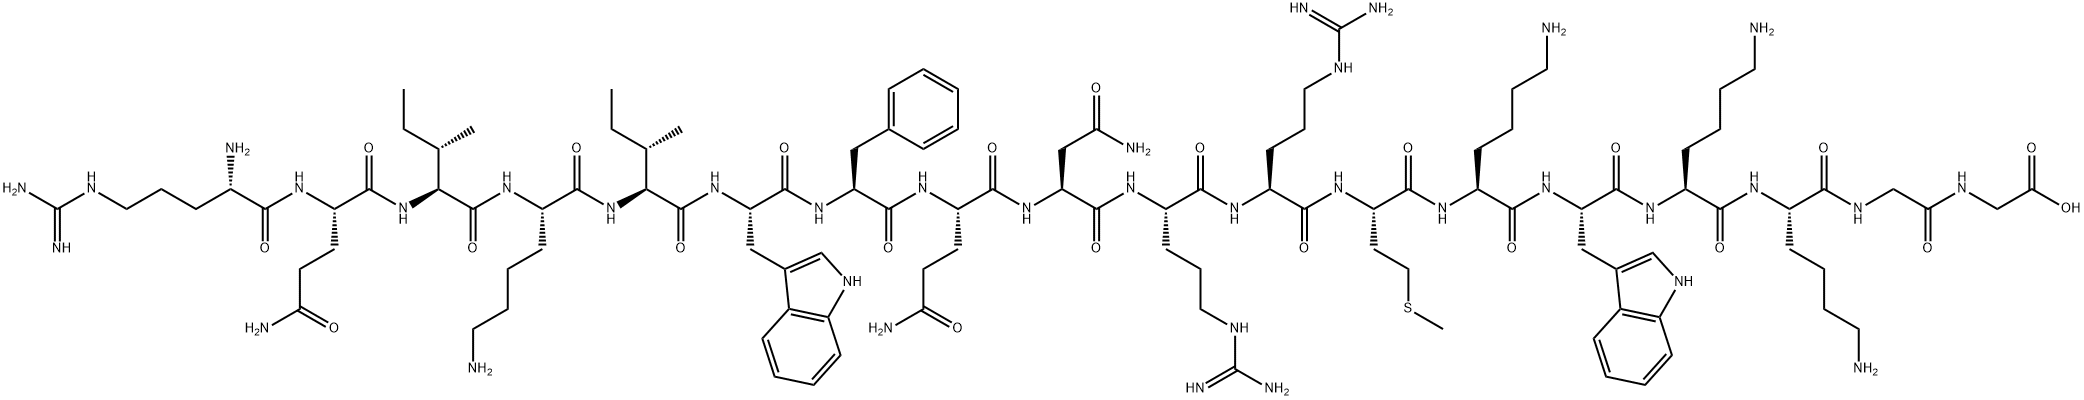 Glycine, L-arginyl-L-glutaminyl-L-isoleucyl-L-lysyl-L-isoleucyl-L-tryptophyl-L-phenylalanyl-L-glutaminyl-L-asparaginyl-L-arginyl-L-arginyl-L-methionyl-L-lysyl-L-tryptophyl-L-lysyl-L-lysylglycyl- Structure